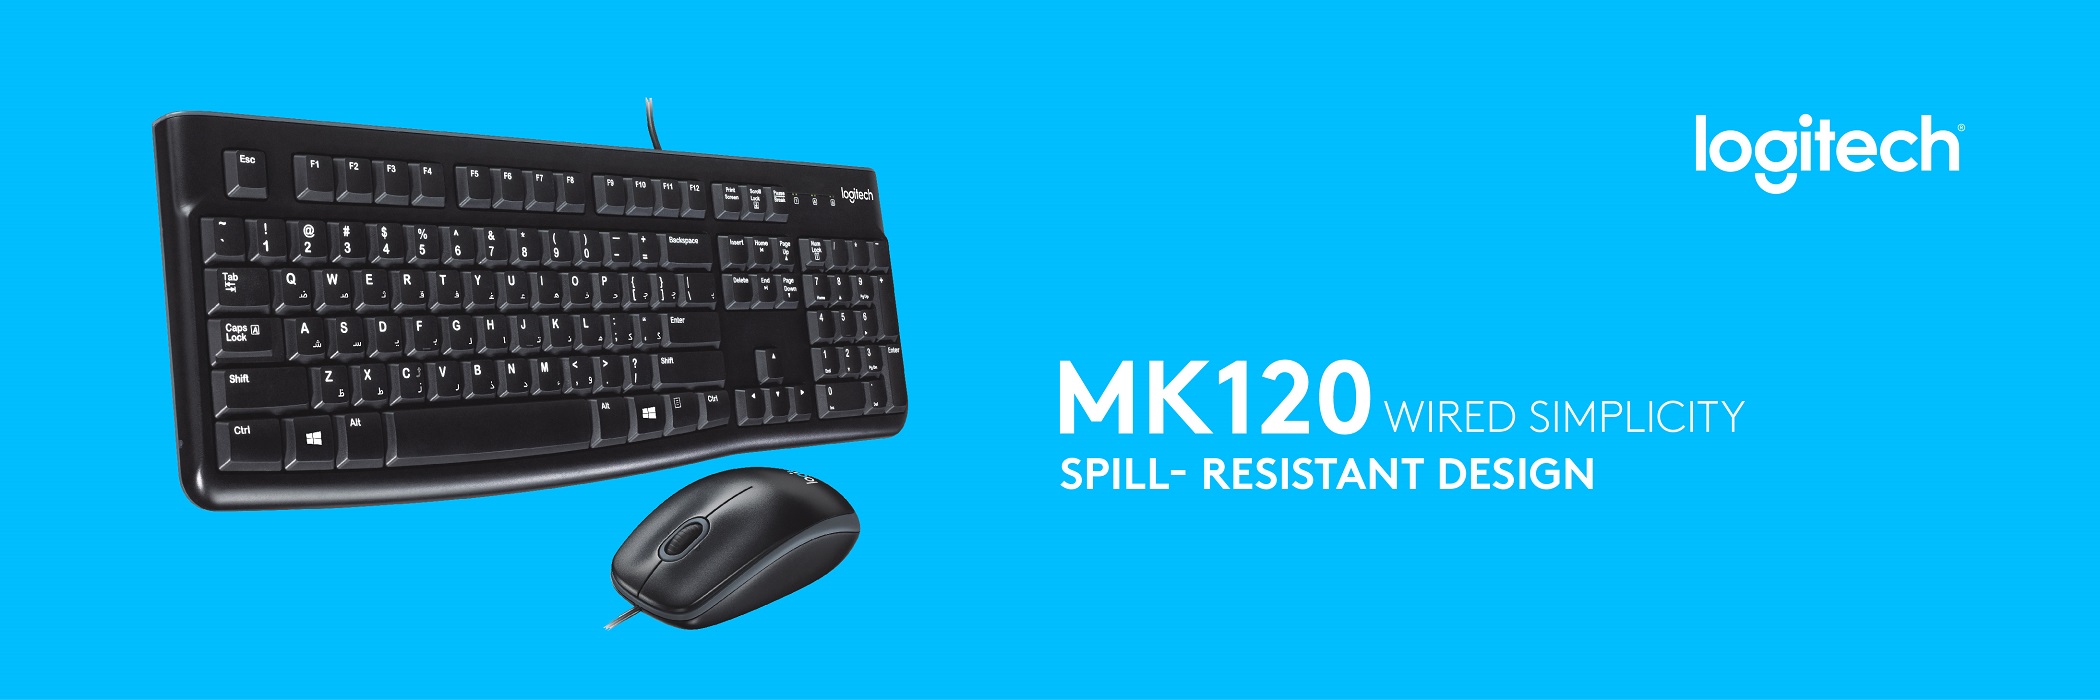 MK120